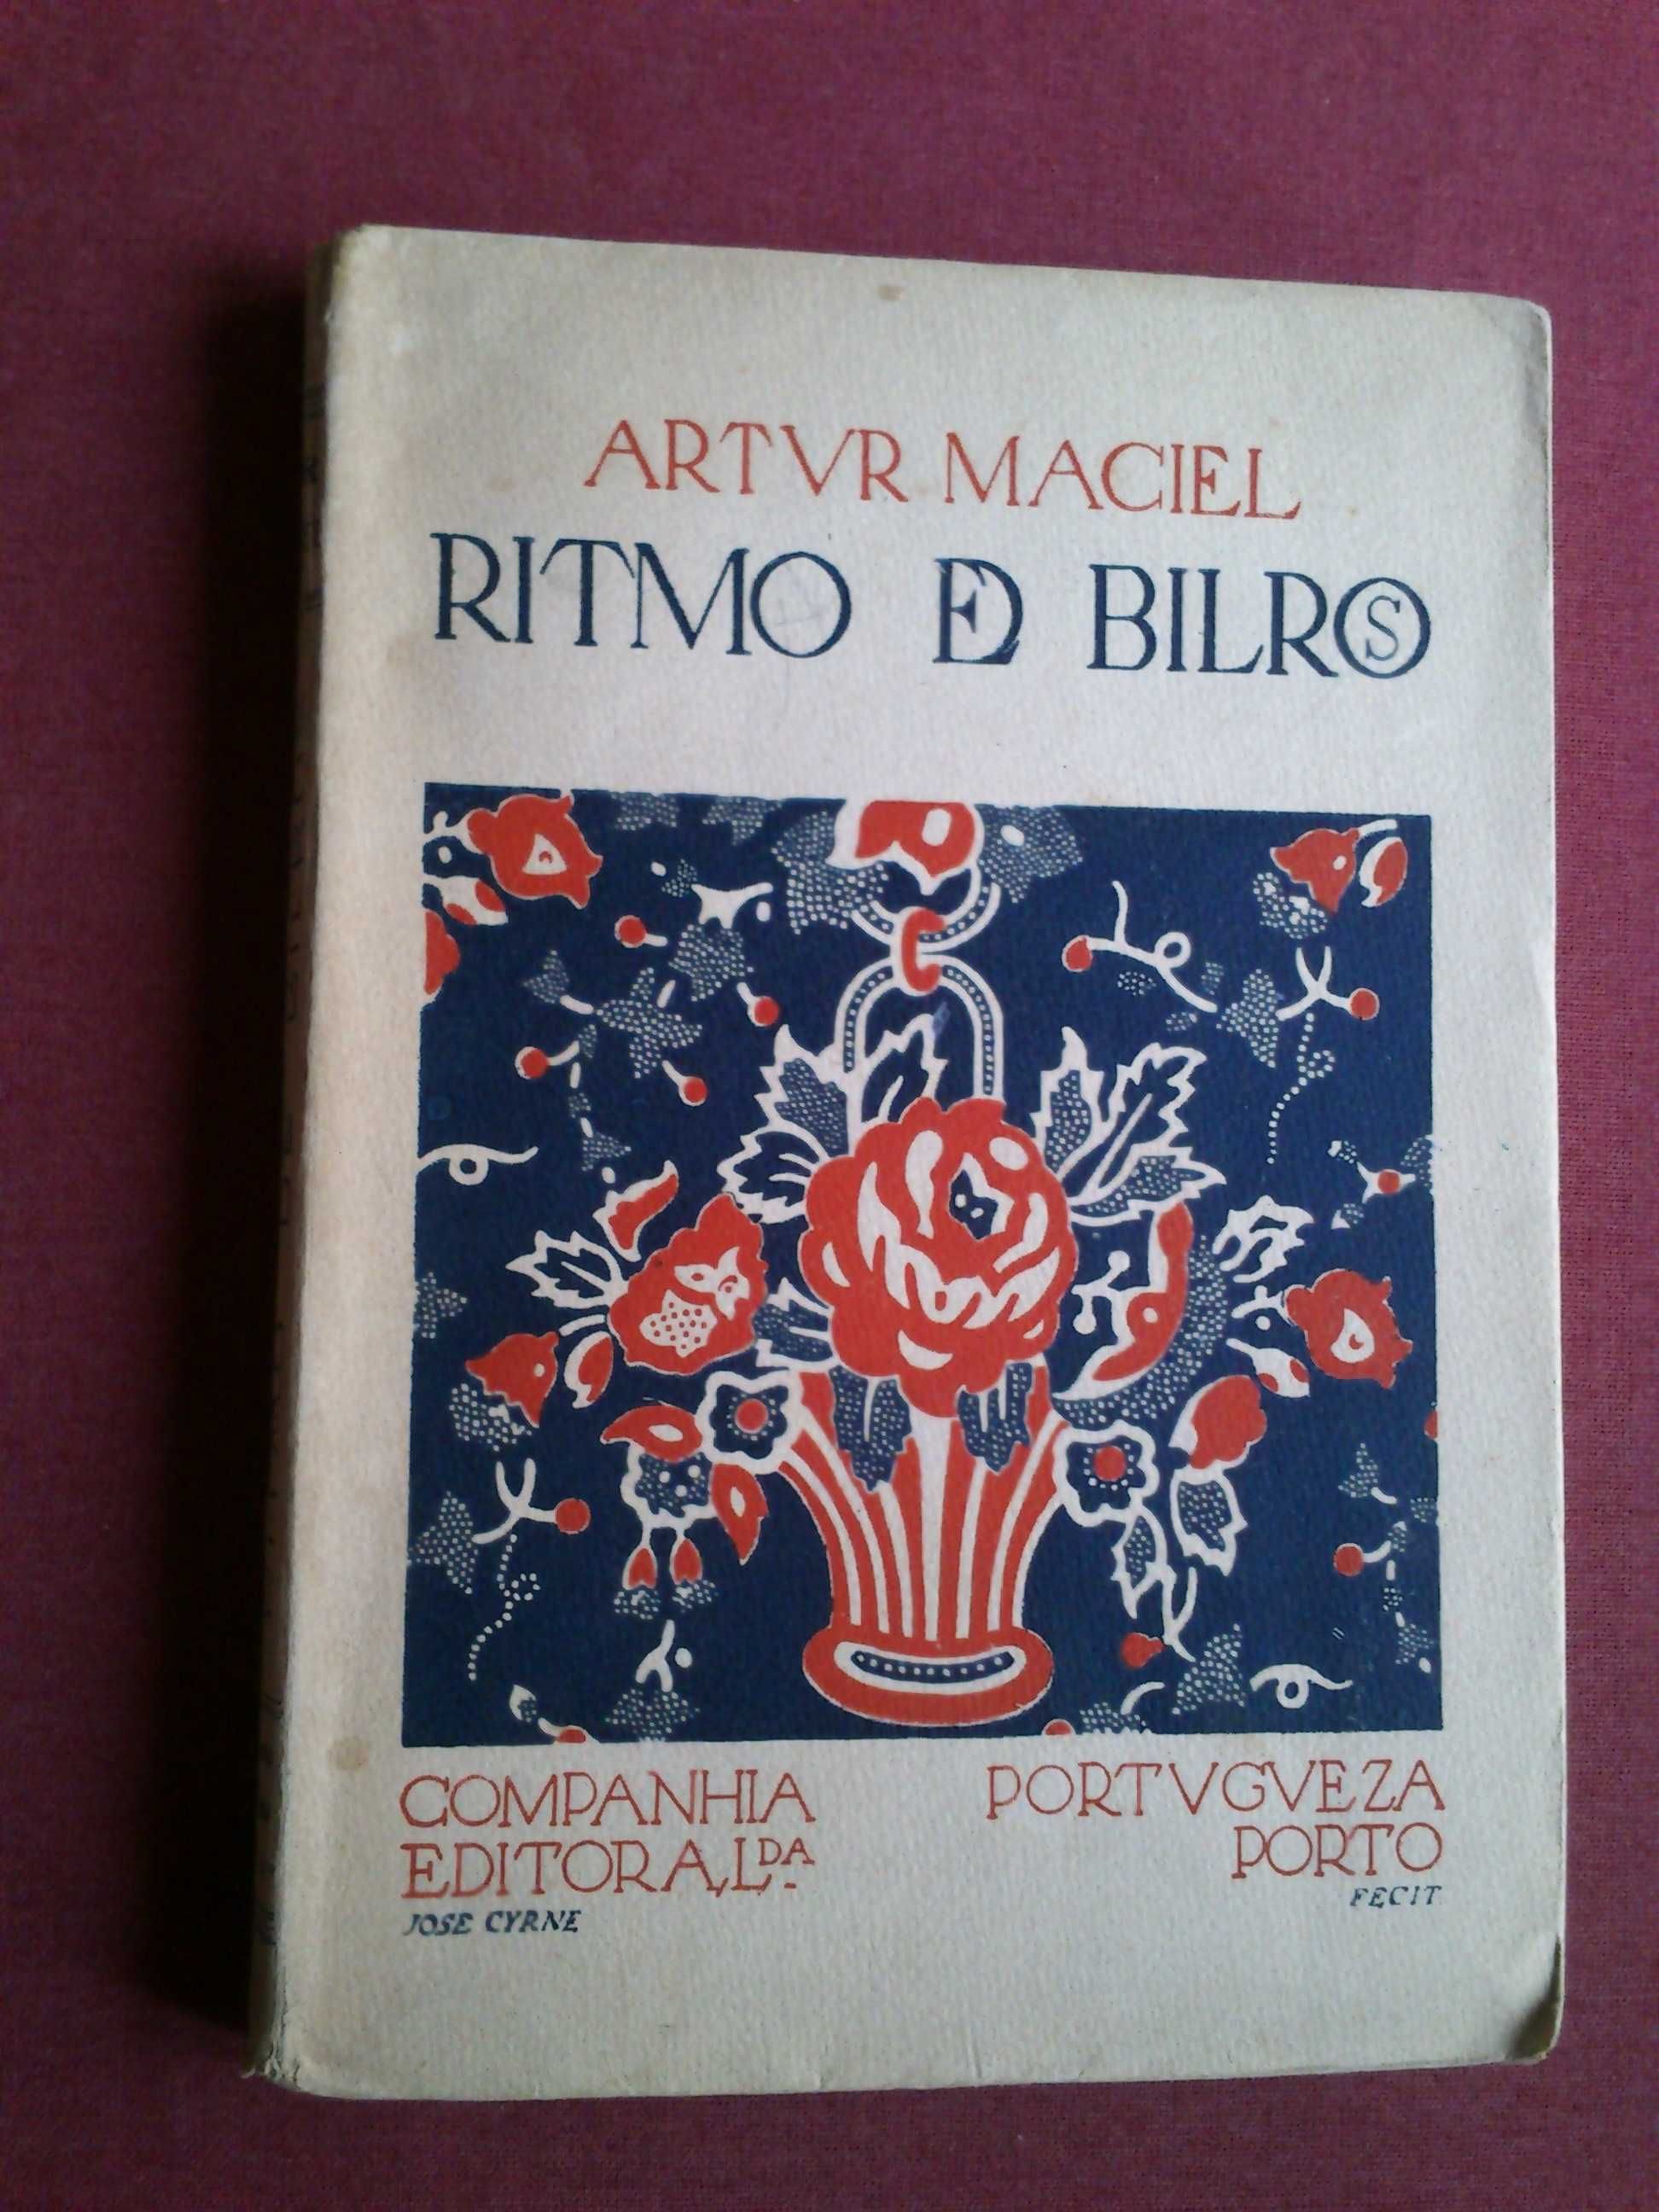 Artur Maciel / José Cyrne-Ritmo De Bilros-1924